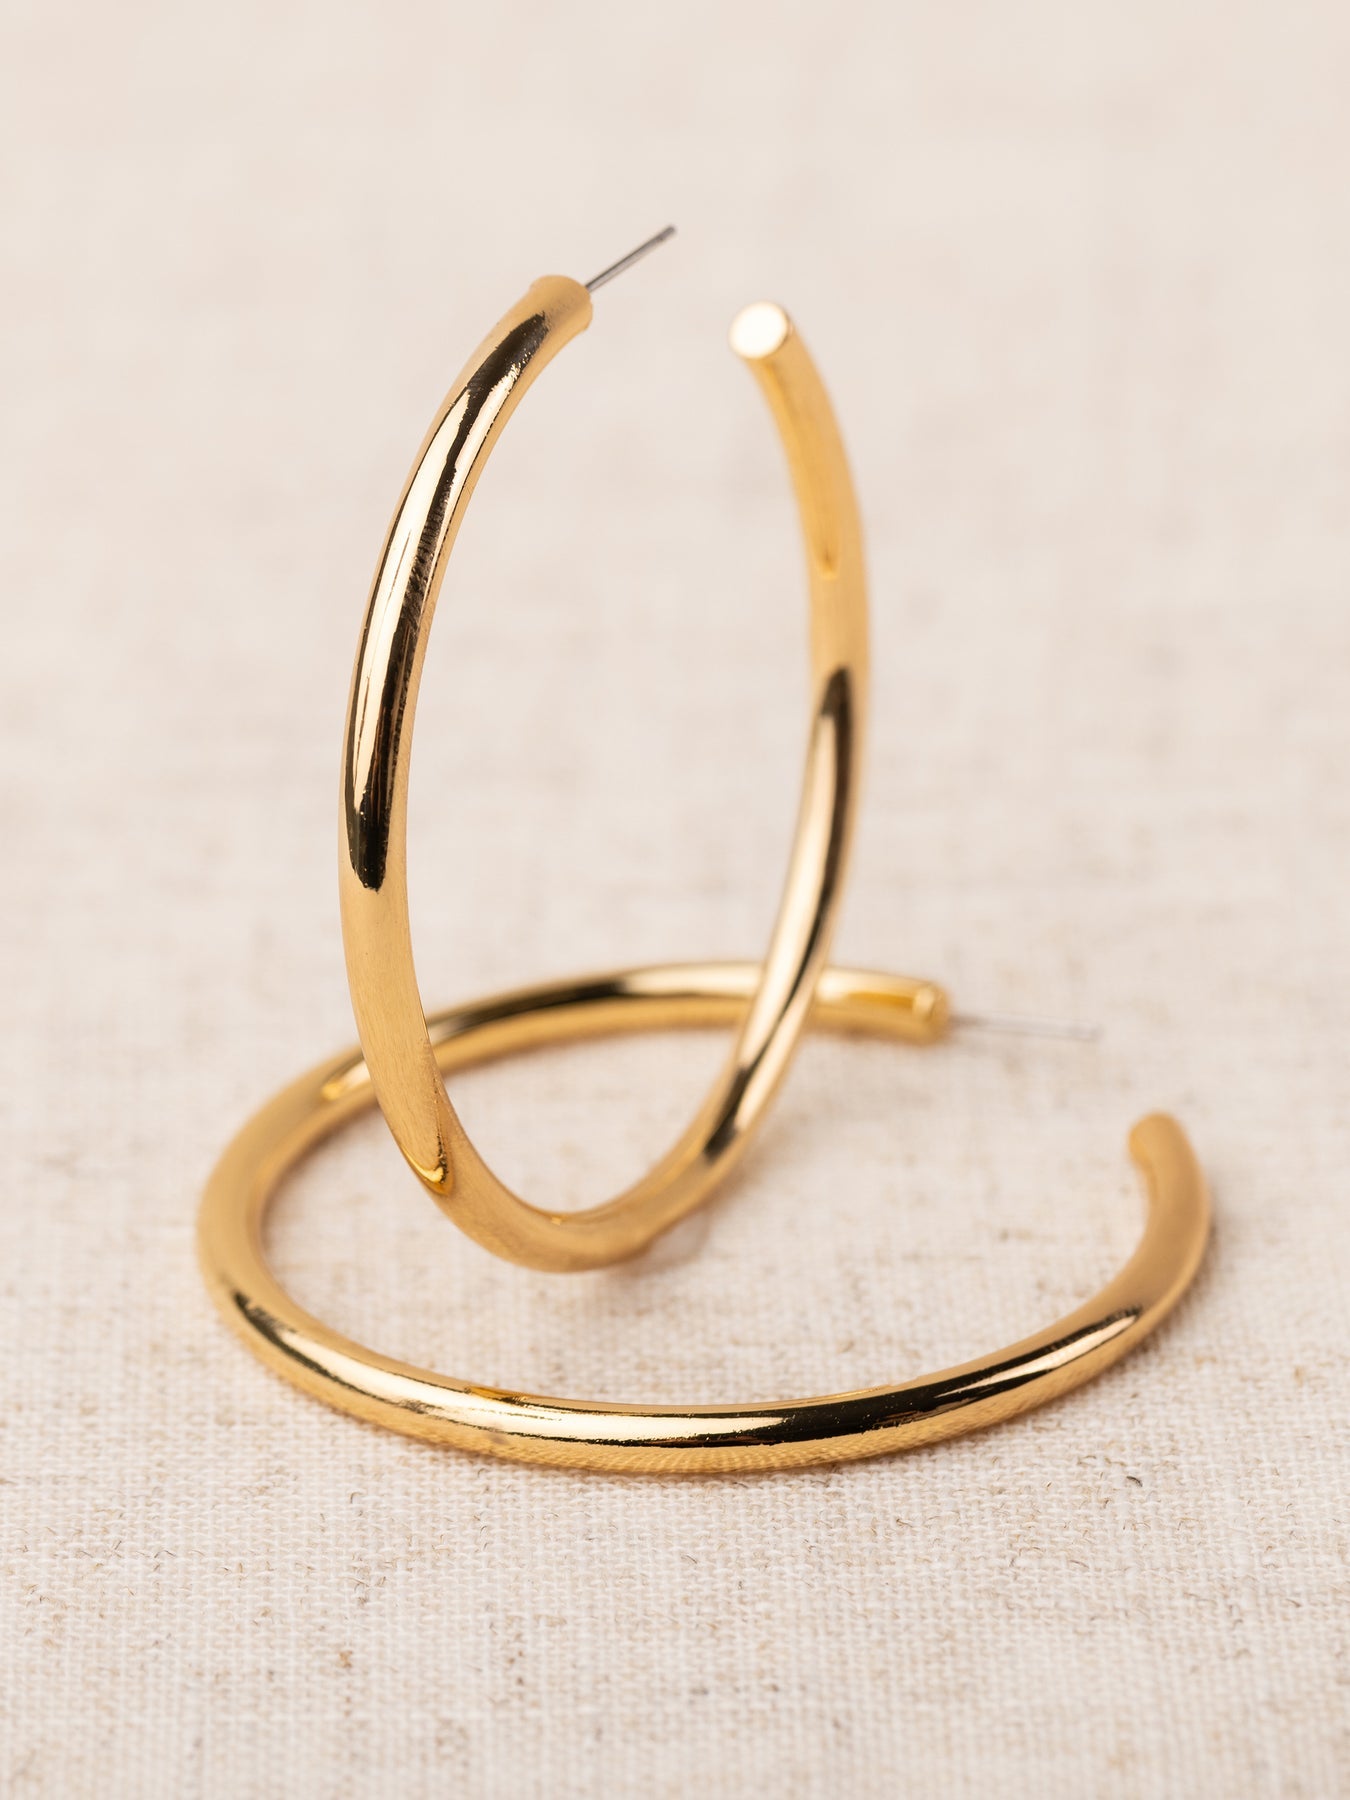 Michelle McDowell - Salem Earrings - Shiny Gold